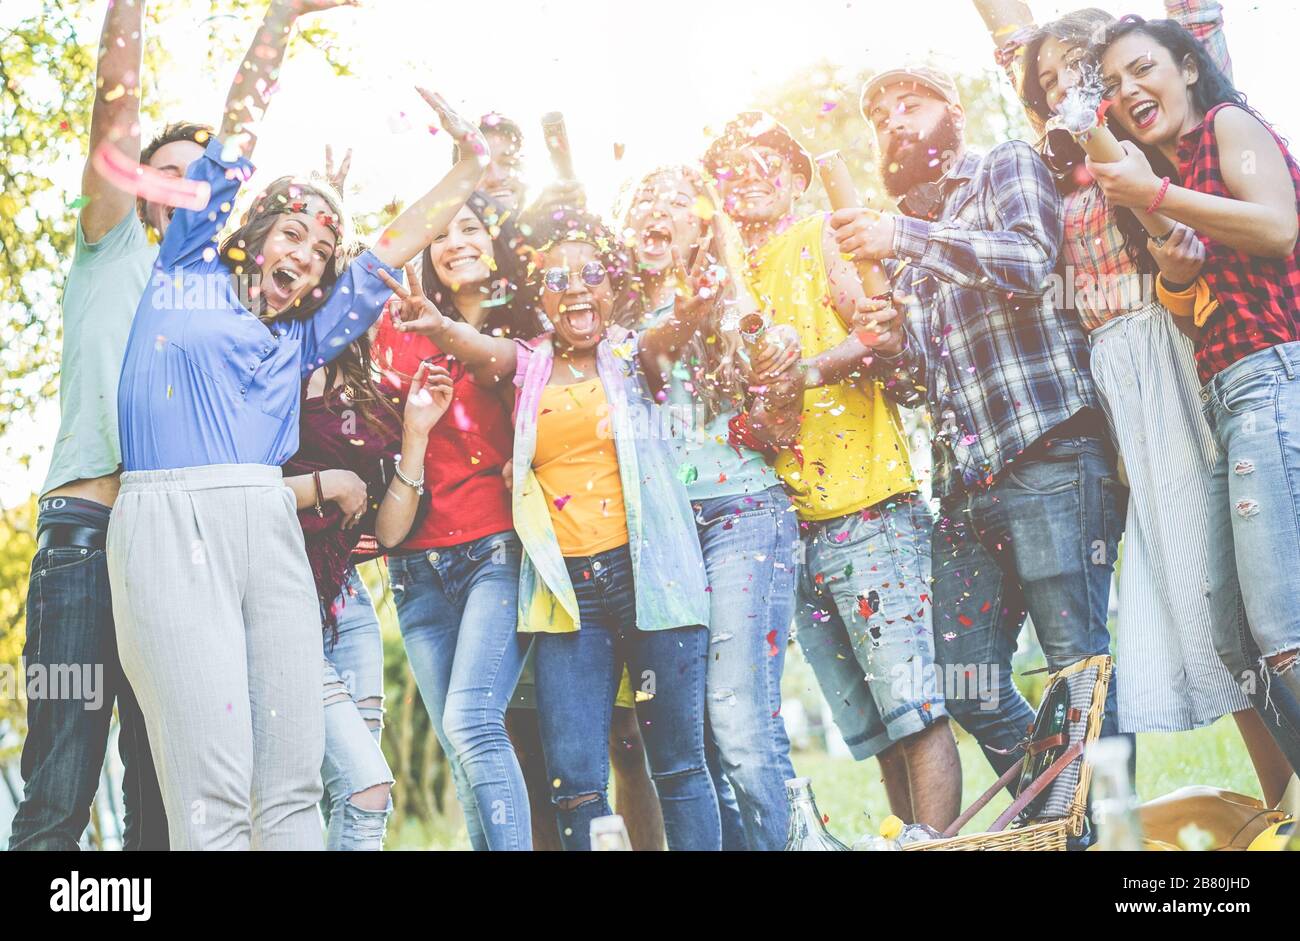 Fröhliche Freunde, die Party machen, Konfetti im Freien werfen - junge Studenten lachen und feiern zusammen - Jugend-Lifestyle, Millennials Generation und Stockfoto